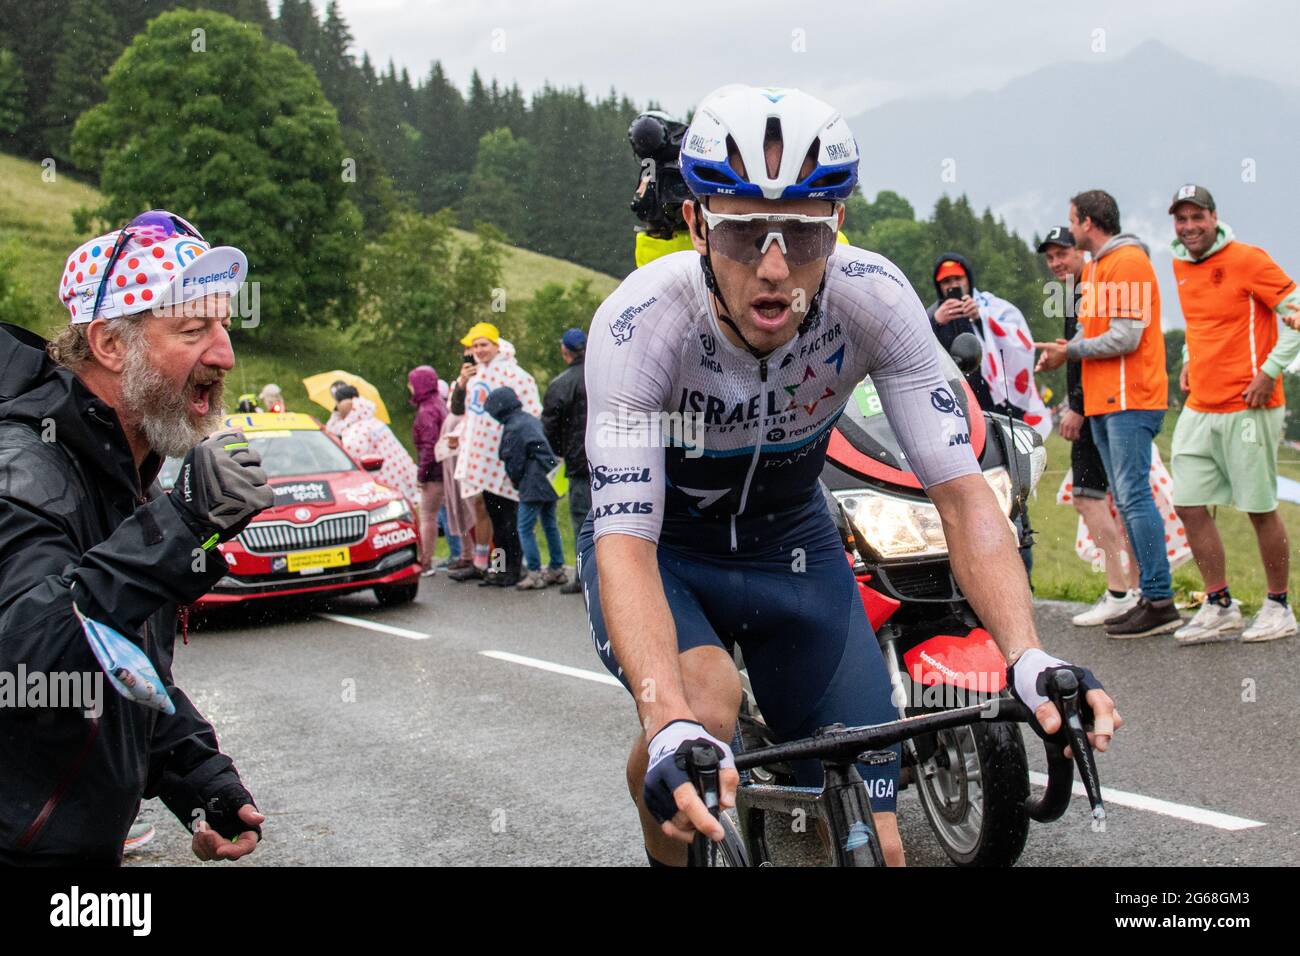 Le Tour de France, Stage 8 Stock Photo Alamy